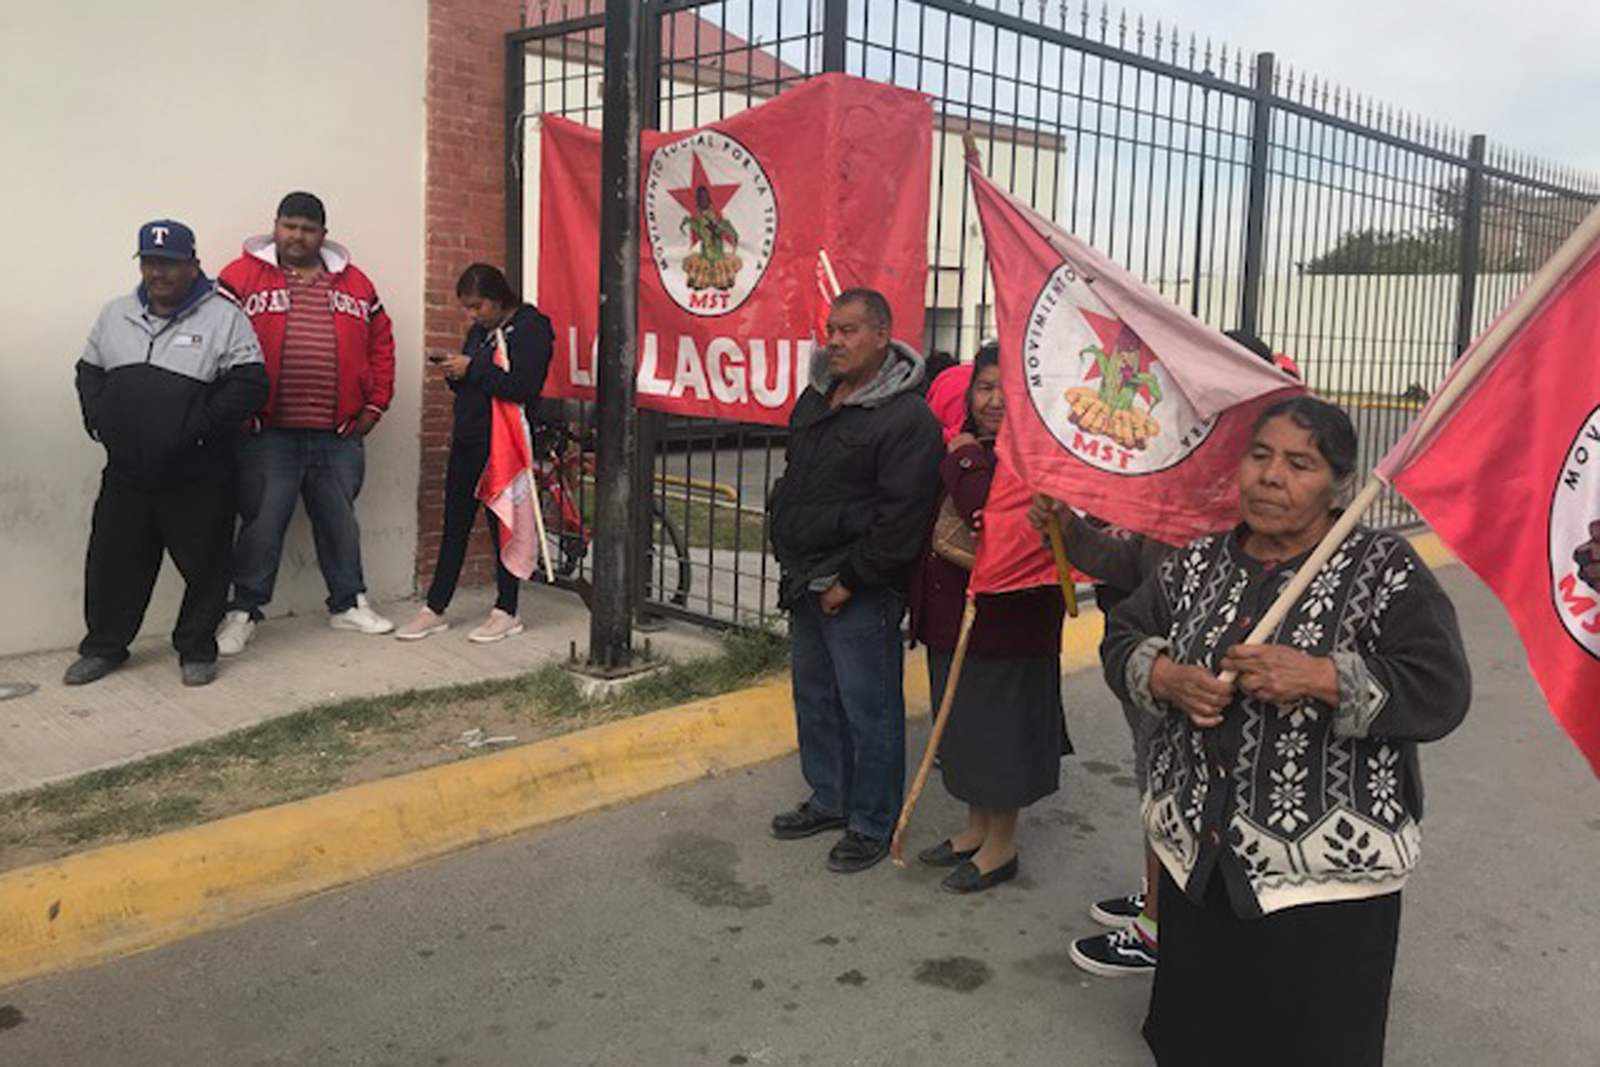 La Agrupación Movimiento Social por la Tierra denunció la detención y agresión contra cinco campesinos que se manifestaban para exigir la indemnización de sus tierras.